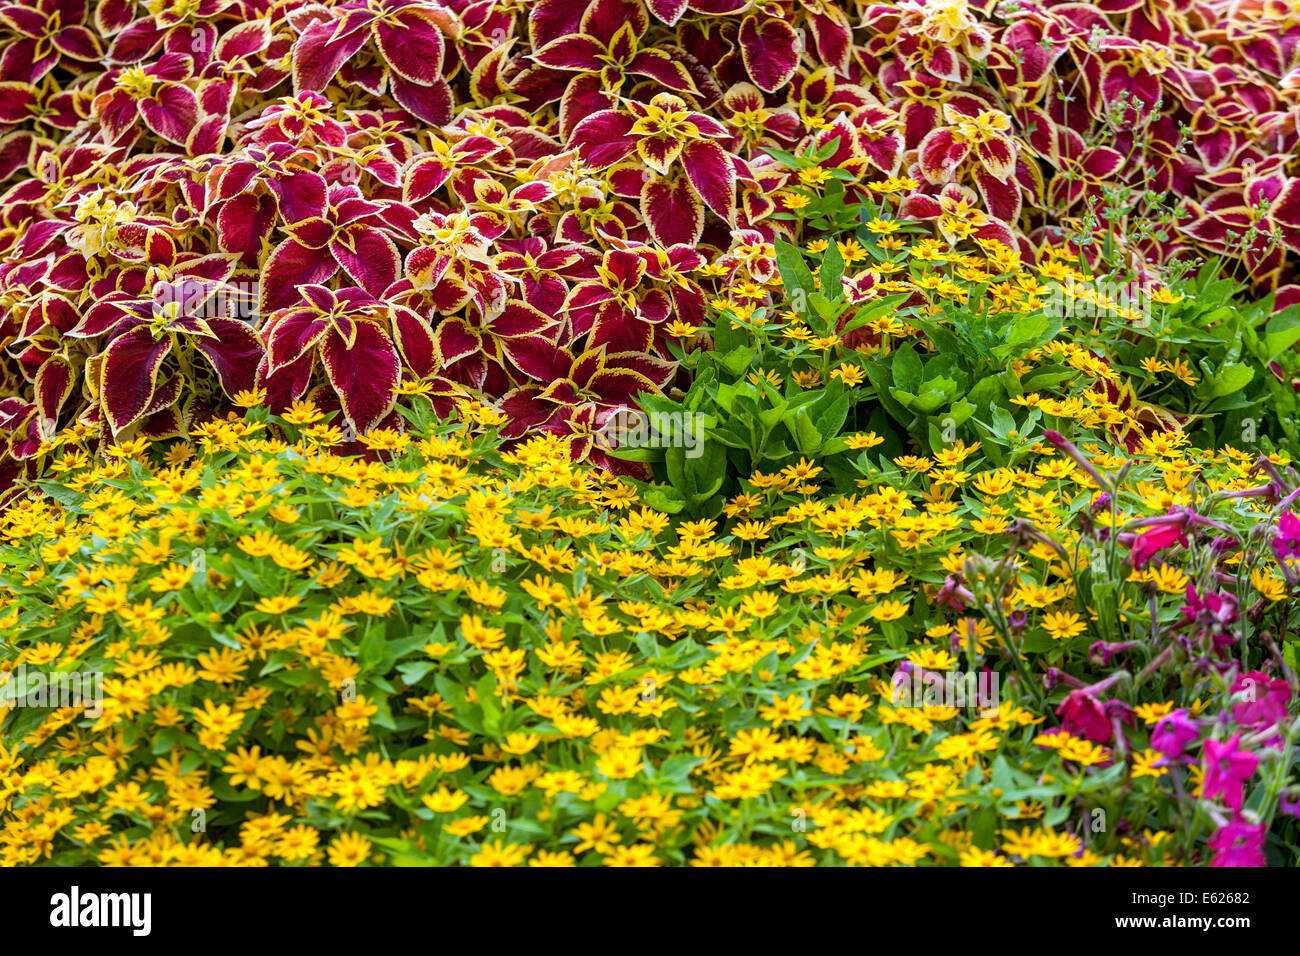 Gemischte bunte Blumenbeet mit jährlichen Blumen, Coleus 'Wizard Scarlet', Melampodium paludosum Butter Daisy, schöne Gartenblumen Bettwäsche Pflanzen Stockfoto